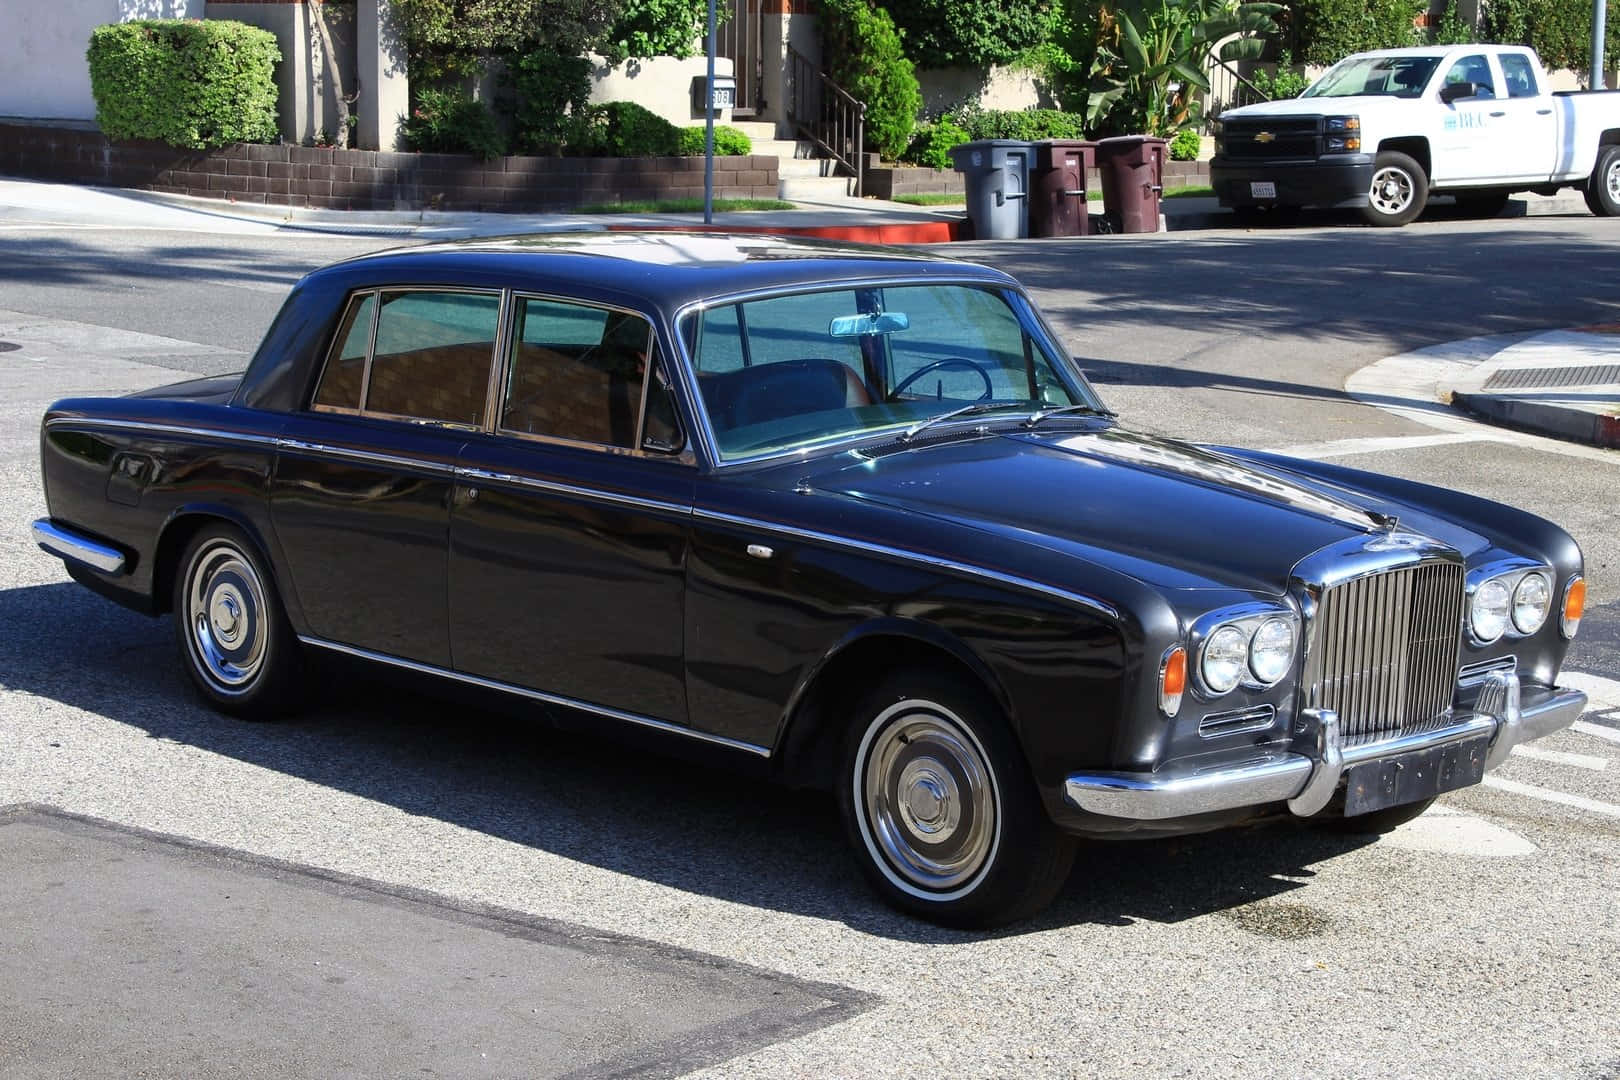 Caption: Classic Luxury - Bentley T1 Wallpaper